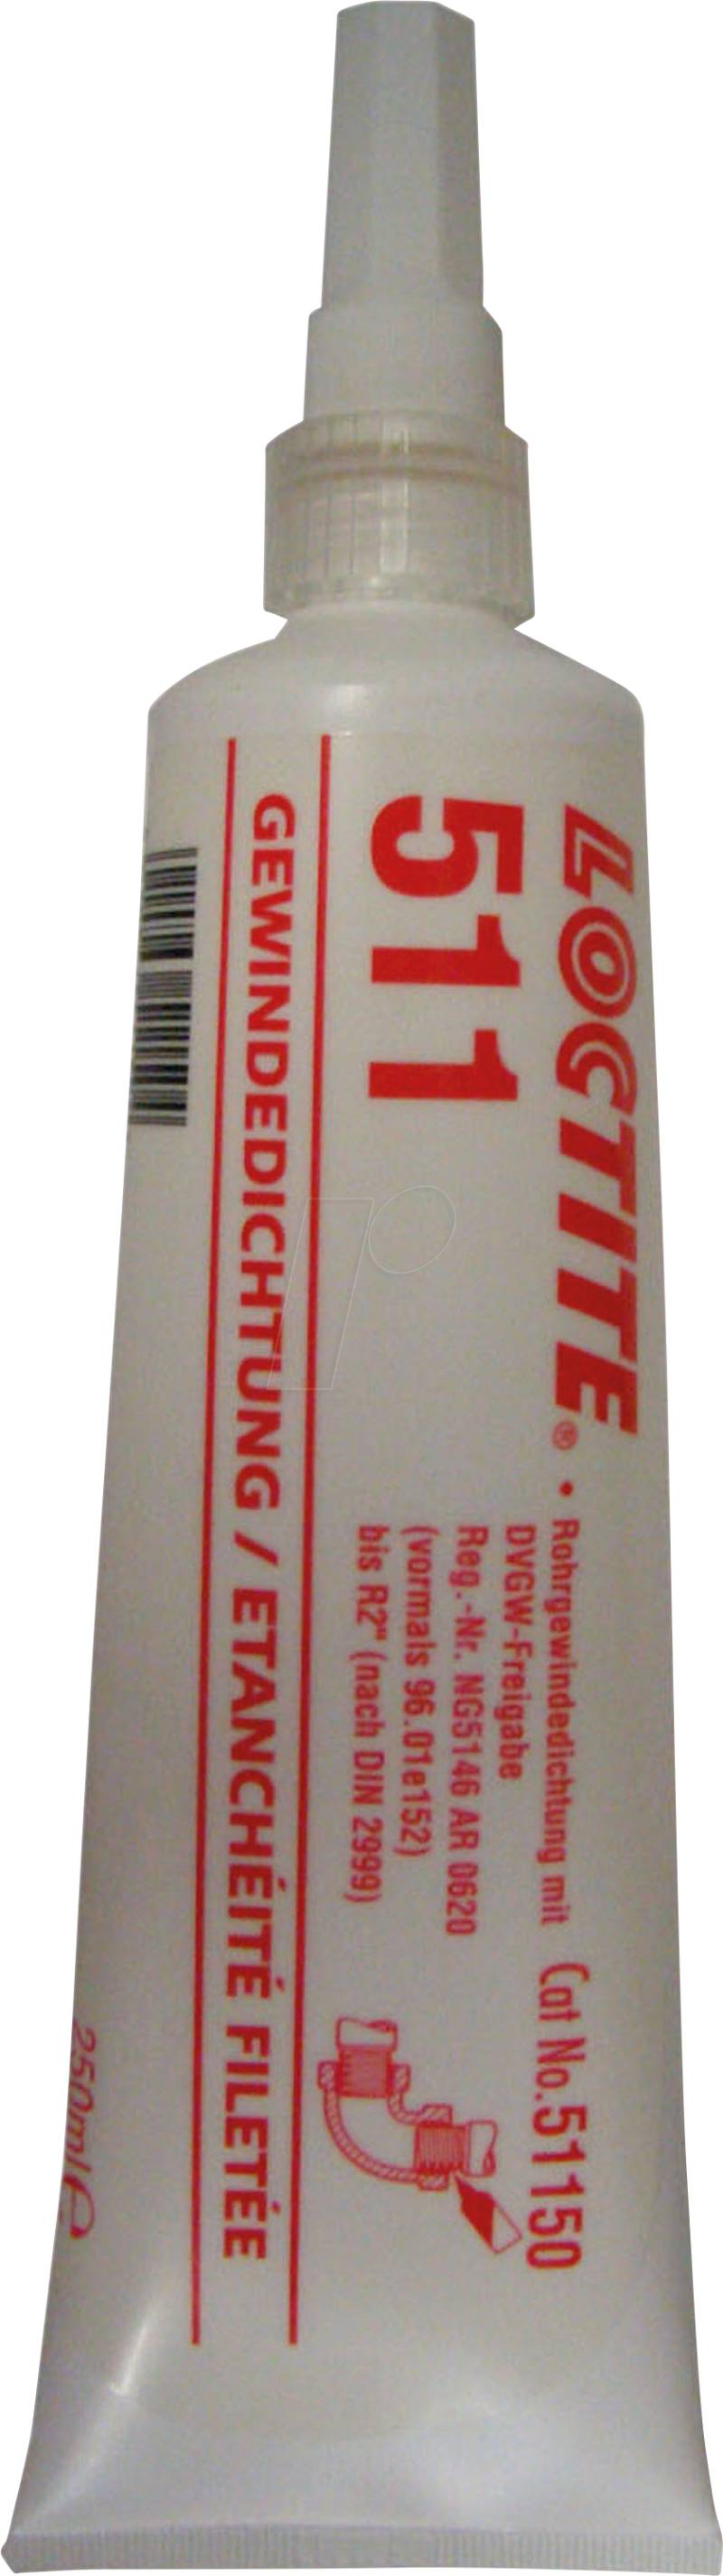 LOCTITE 511 - Gewindedichtung, niedrigfest, Tube, 50 ml von Loctite